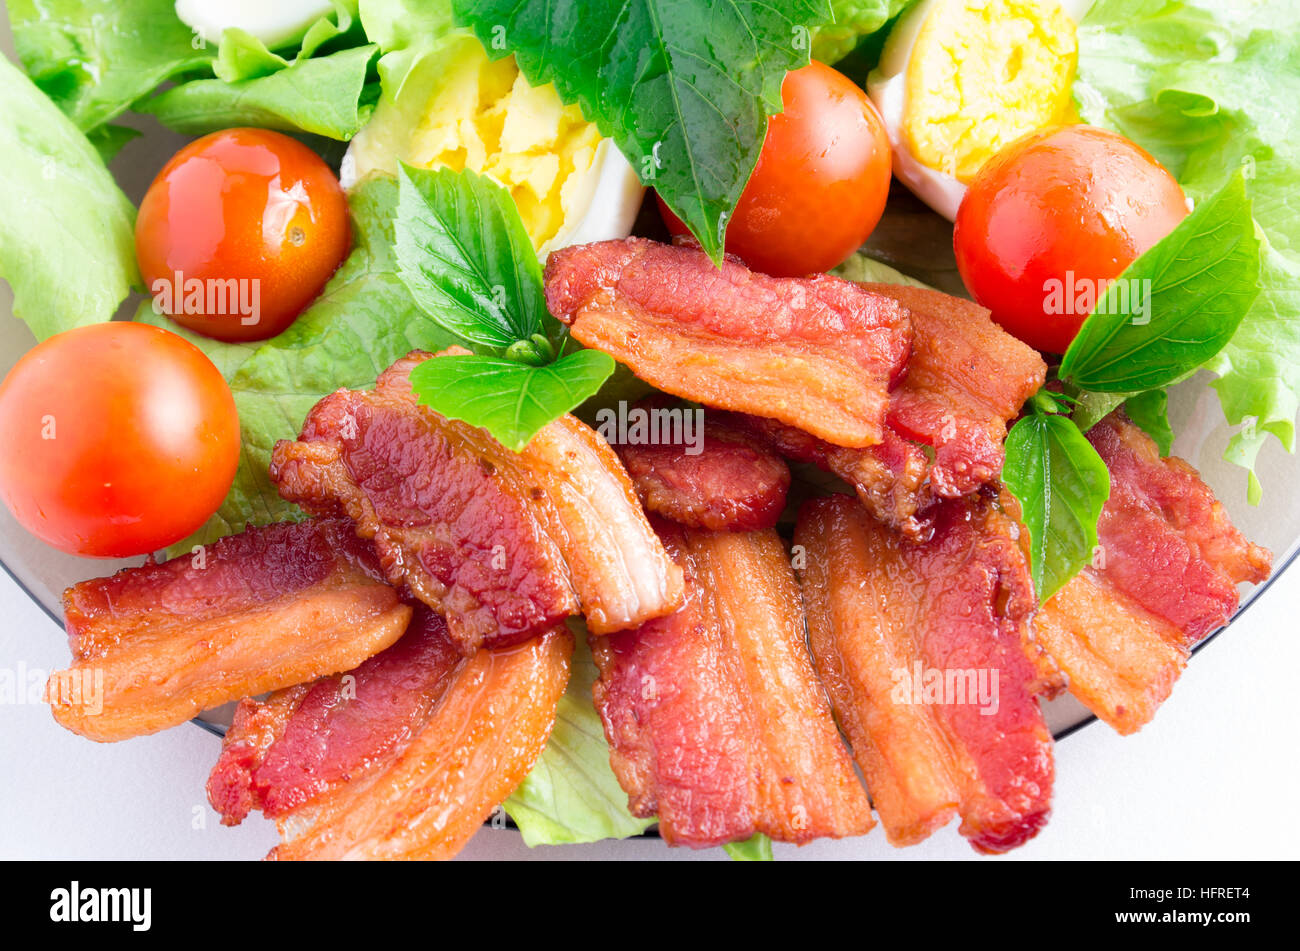 Vue de dessus d'un fragment d'un gros plan de la plaque avec laitue, tomates cerises, bacon, les herbes et les œufs durs avec une faible profondeur de foyer Banque D'Images